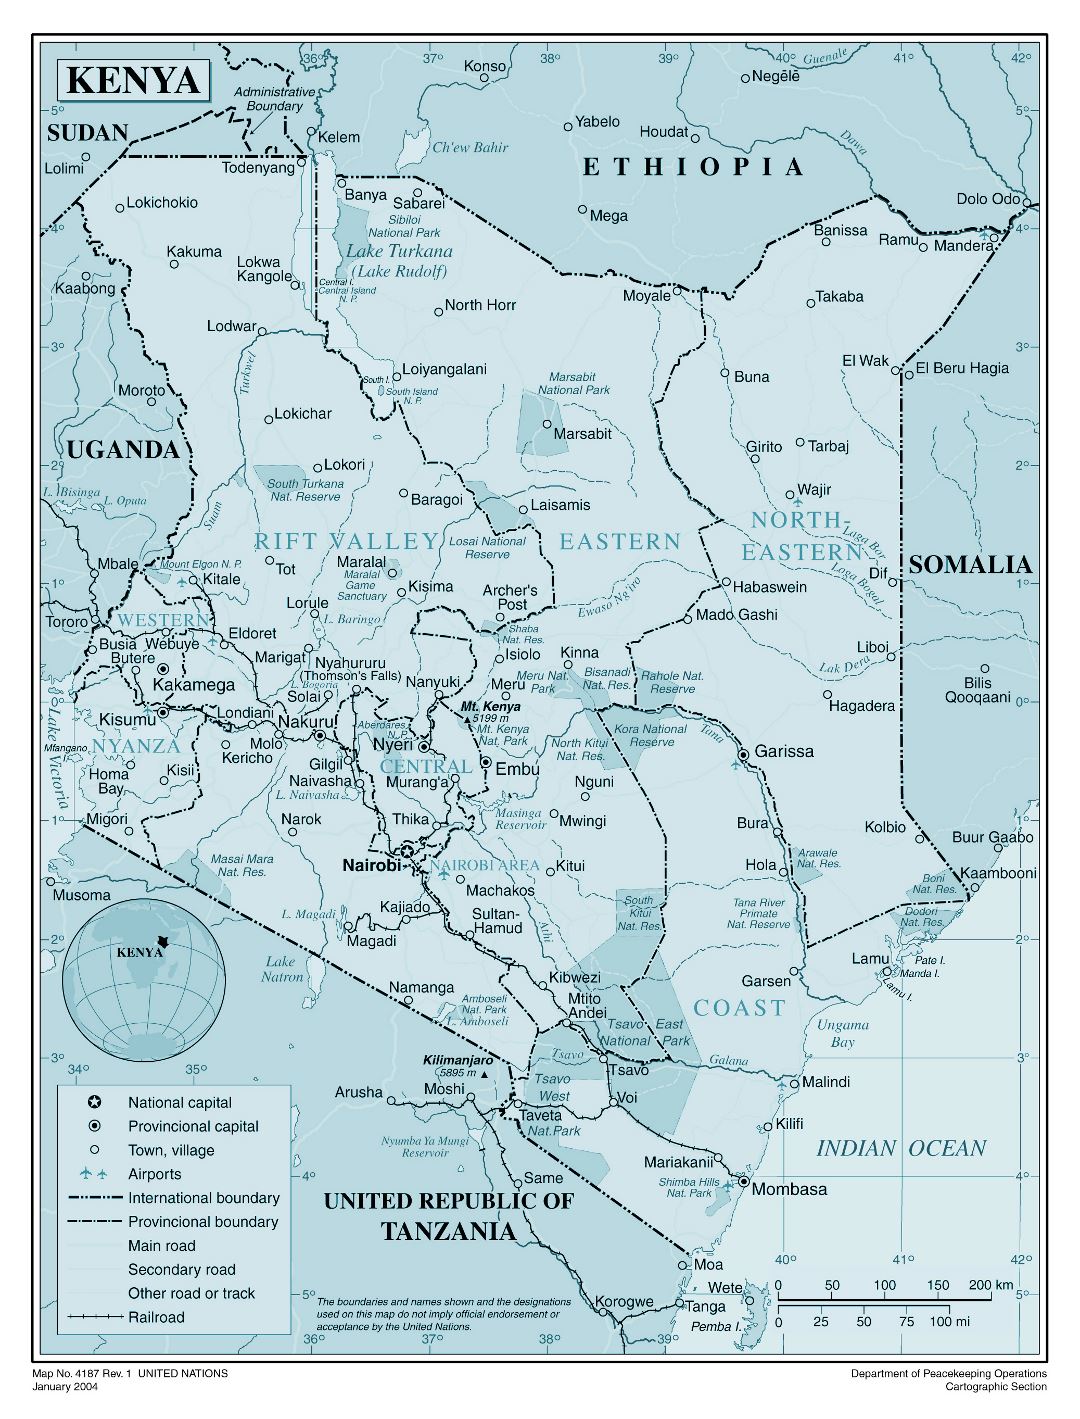 Большая детальная политическая и административная карта Кении со всеми городами, дорогами, железными дорогами и аэропортами